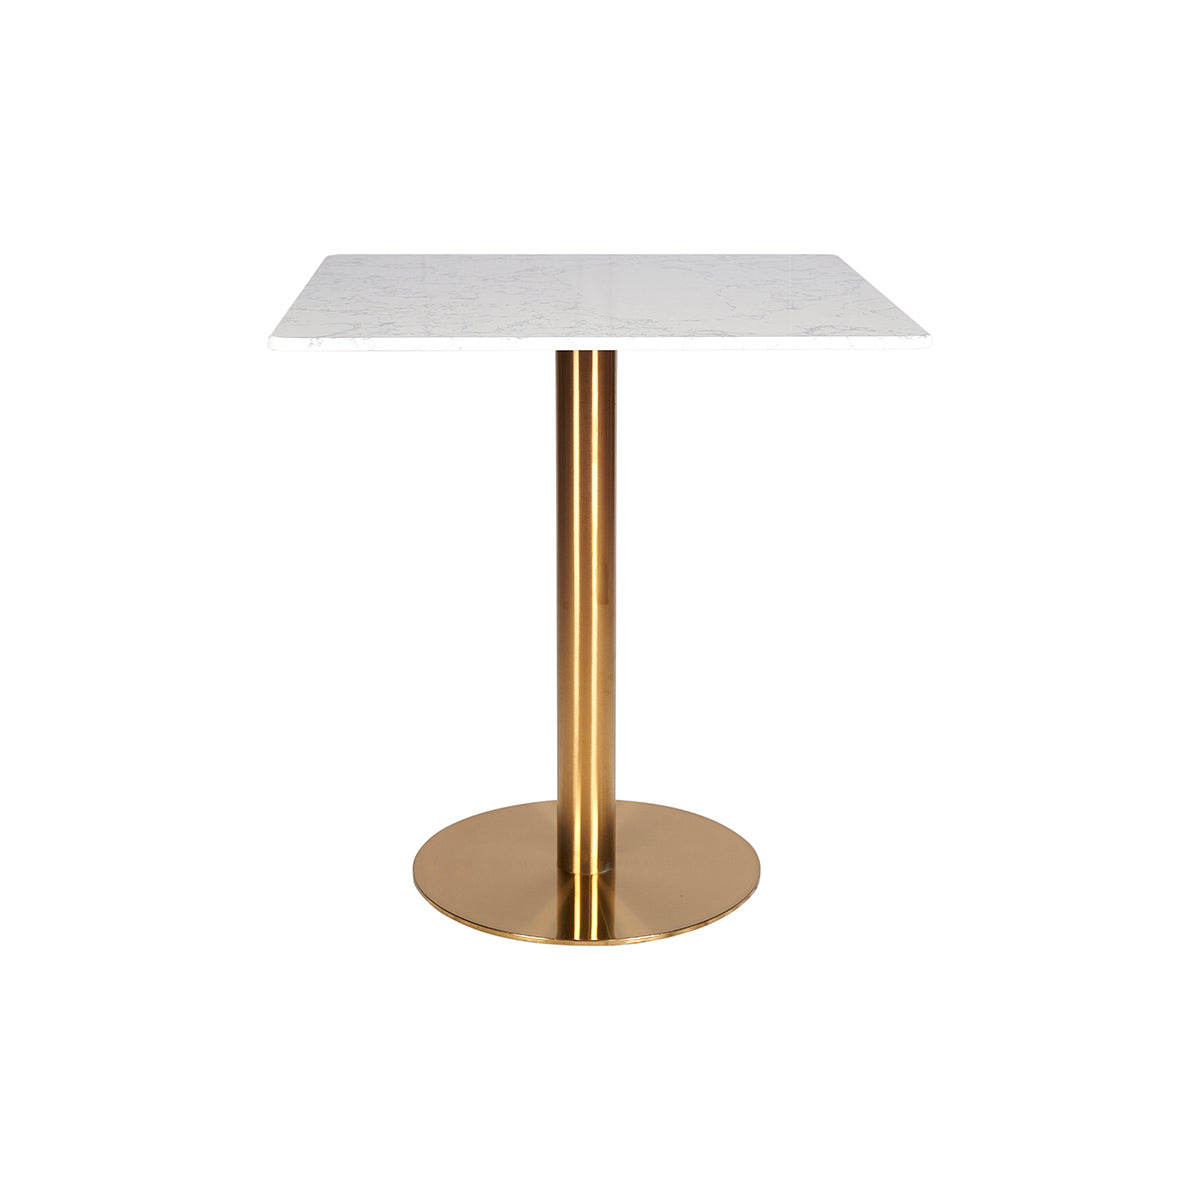 Mesa de jantar base em aço inox dourado tampo quadrado em mármore branco 70x70cm